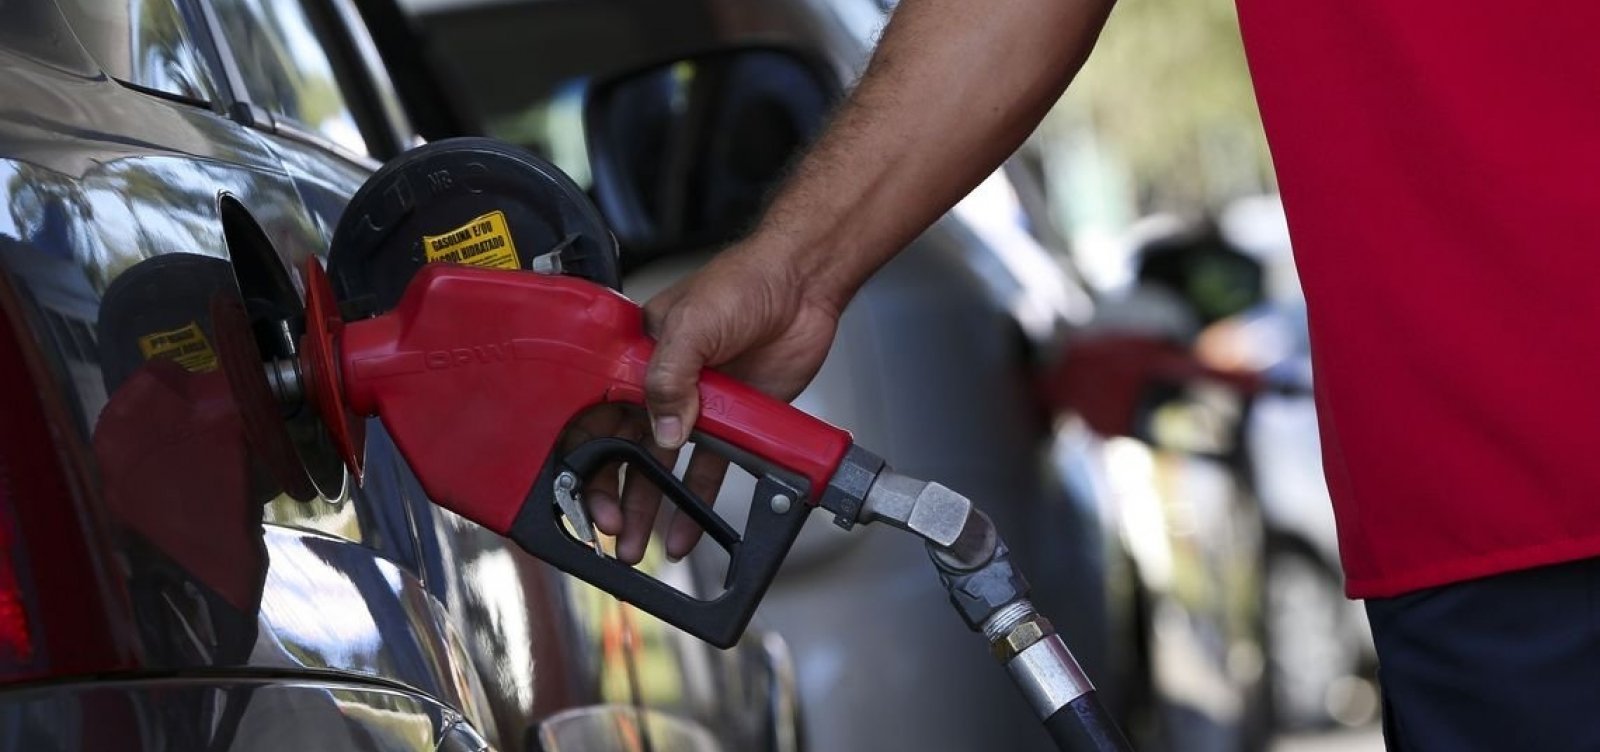 Após alta do petróleo, ANP fiscaliza postos de gasolina contra preços abusivos